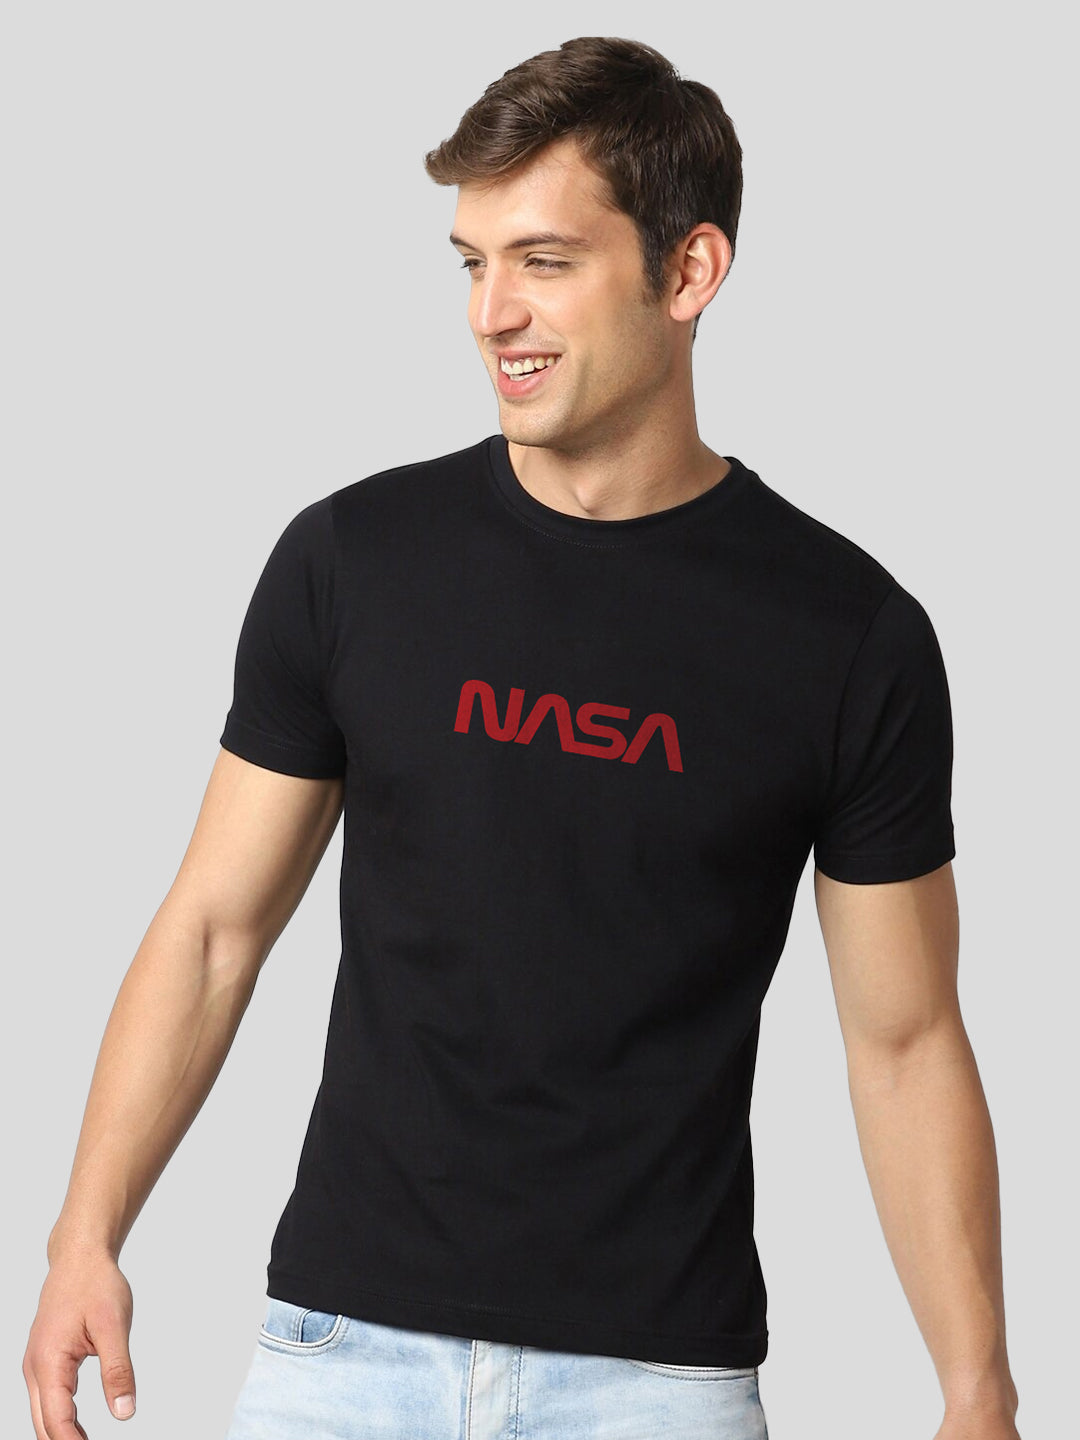 Nasa Half Sleeve T-Shirt